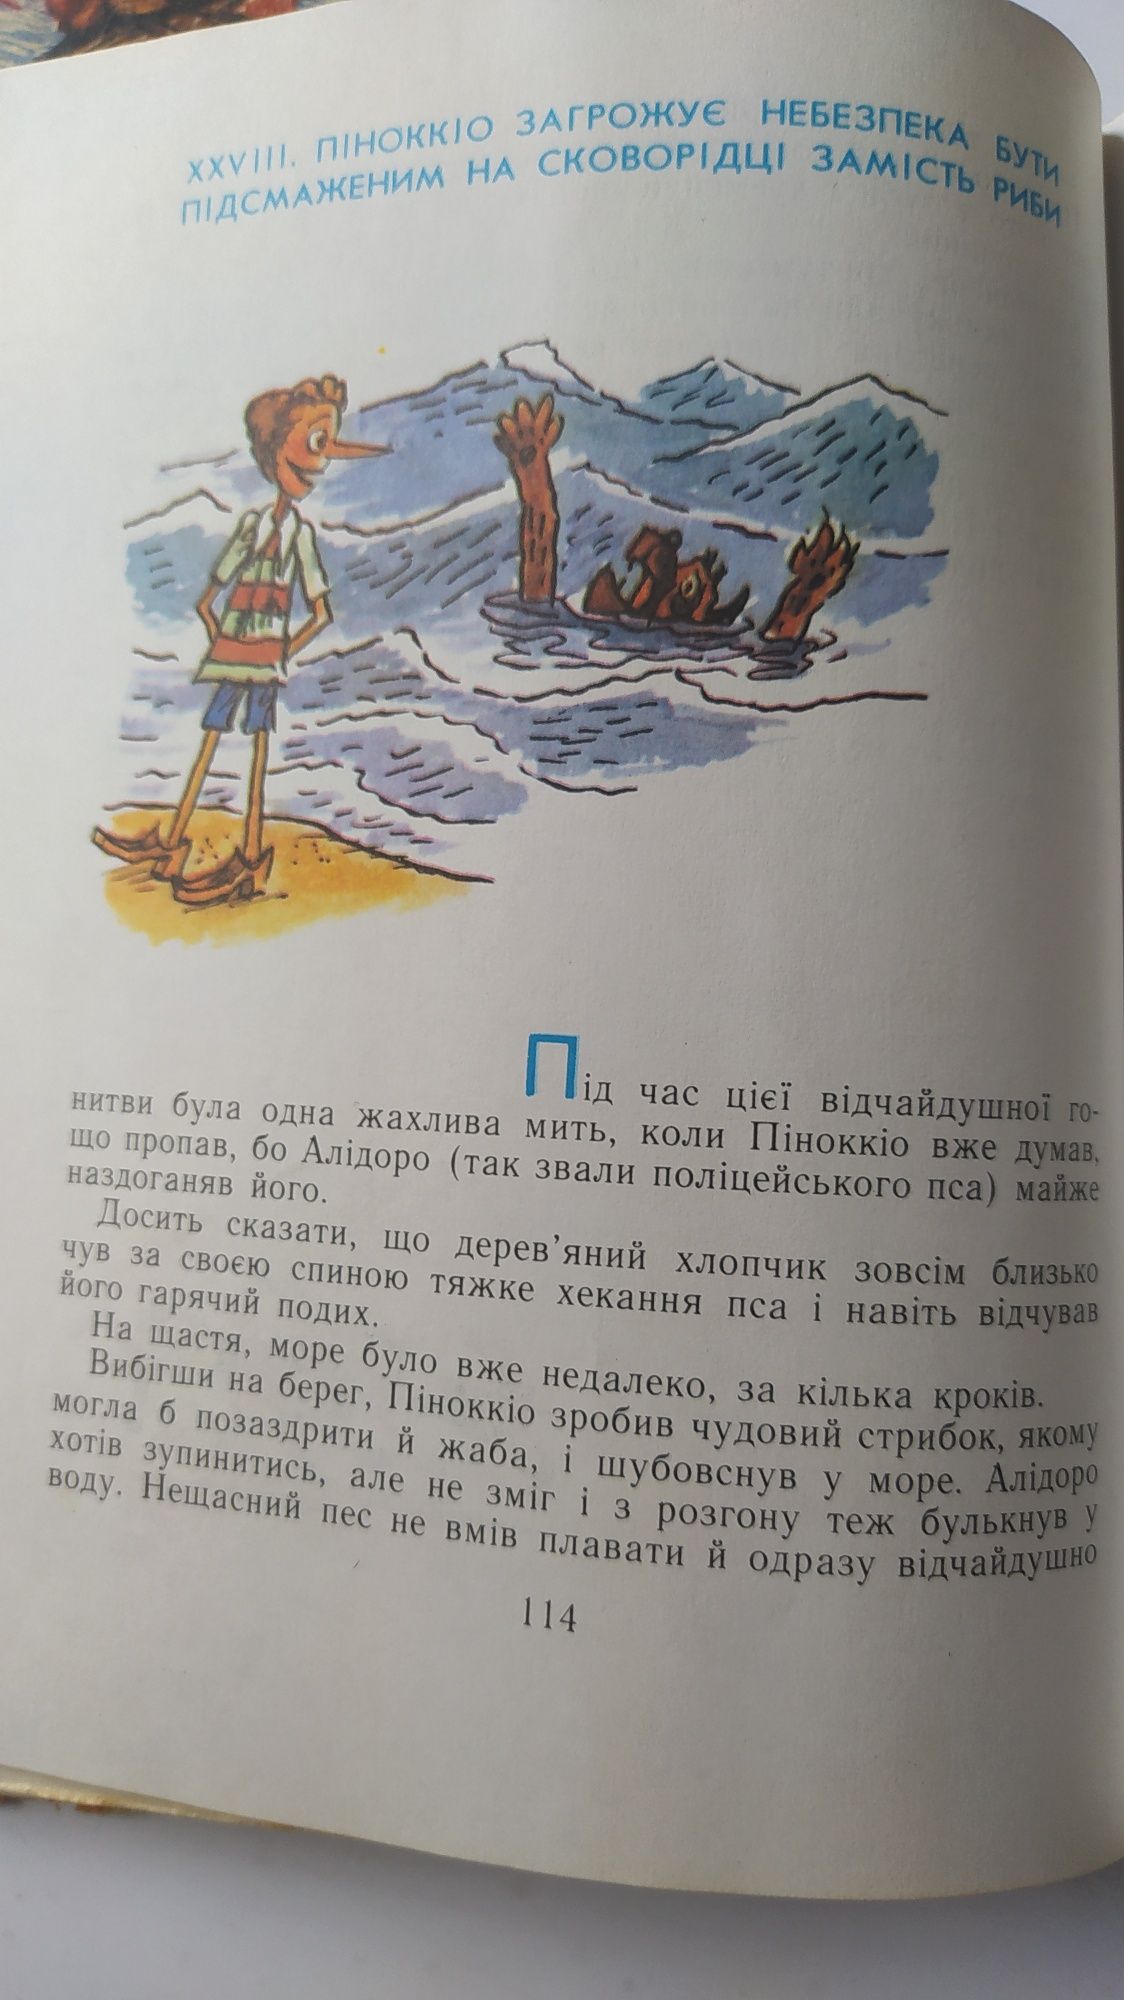 Дитячі книжки українською мовою.